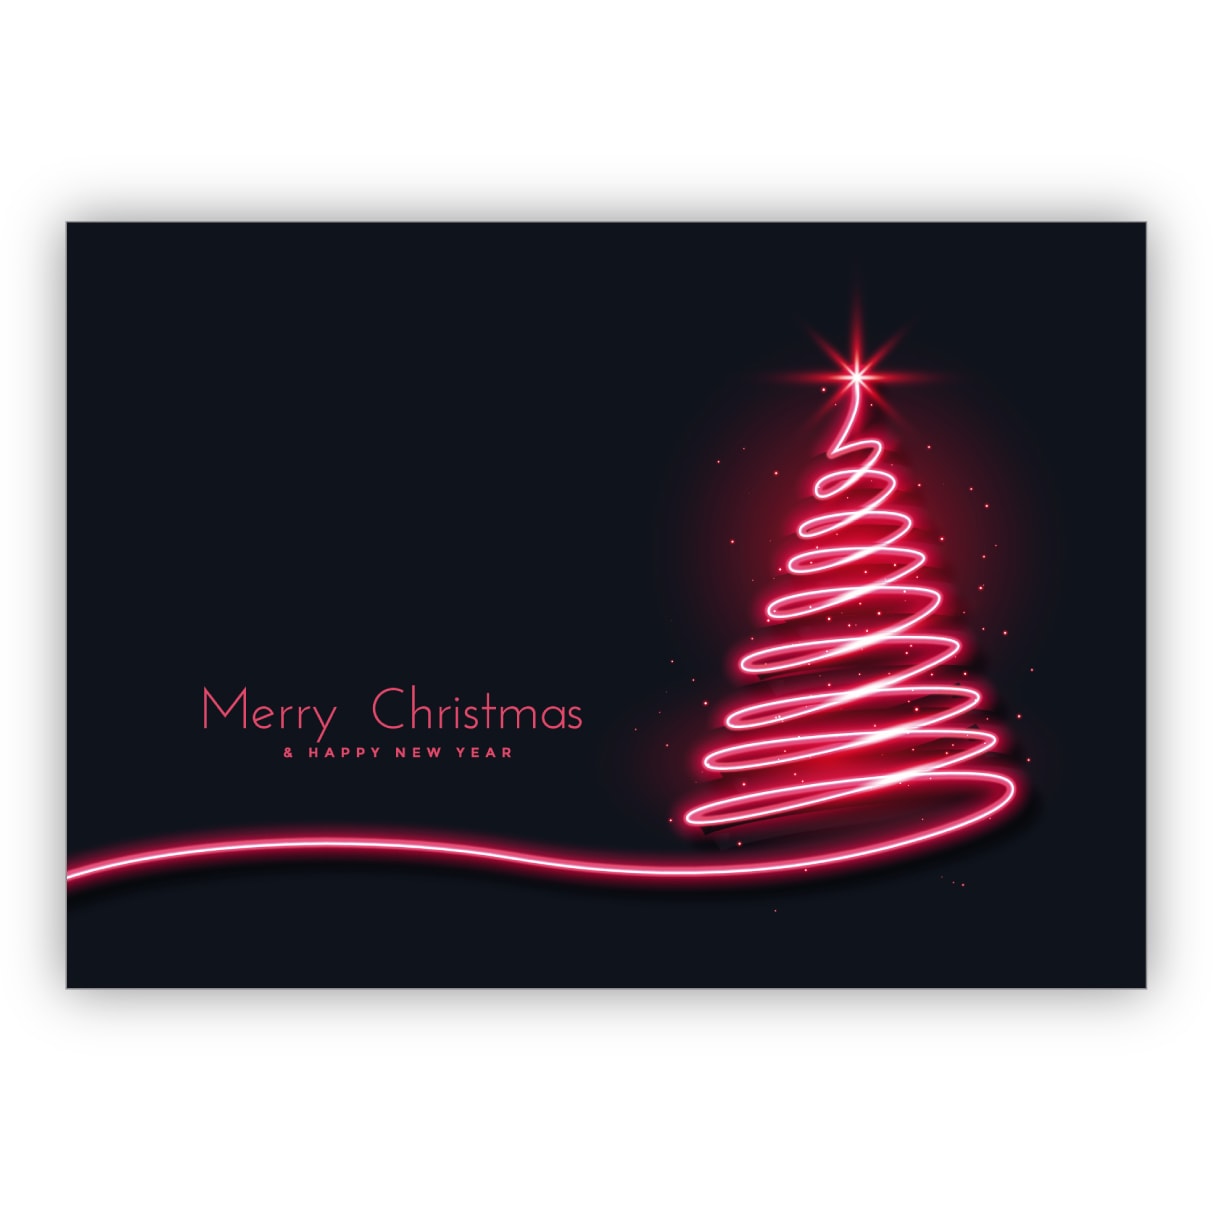 Tolle trendige Weihnachtskarte mit pinkem Weihnachtsbaum: Merry Christmas & happy new year